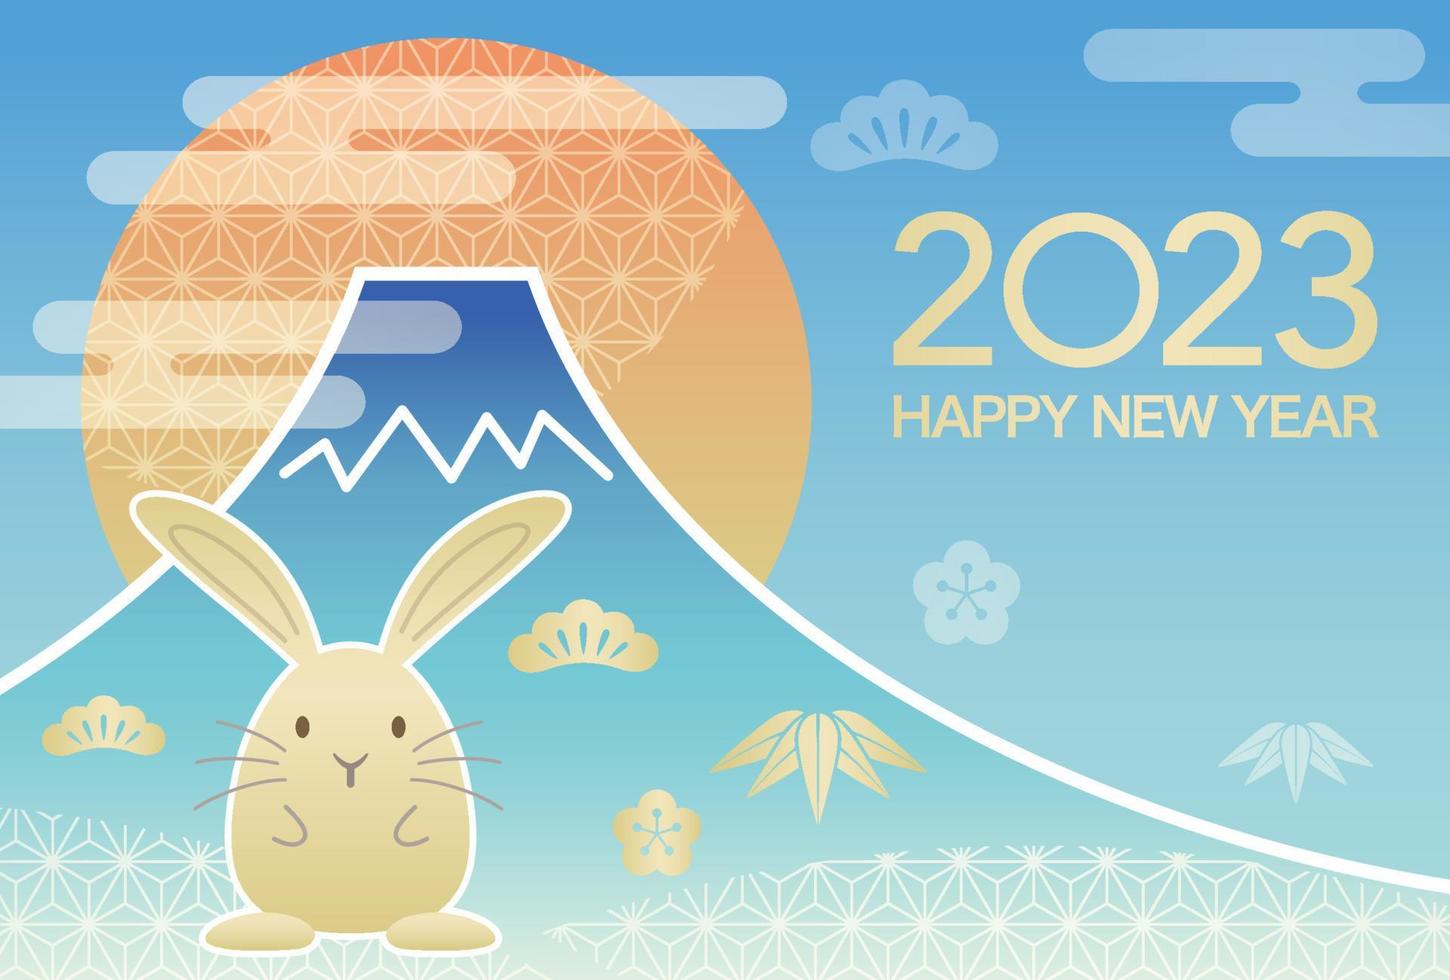 2023, ano do coelho, modelo de vetor de cartão de saudação de ano novo com mt. fuji, sol nascente e um mascote de coelho.